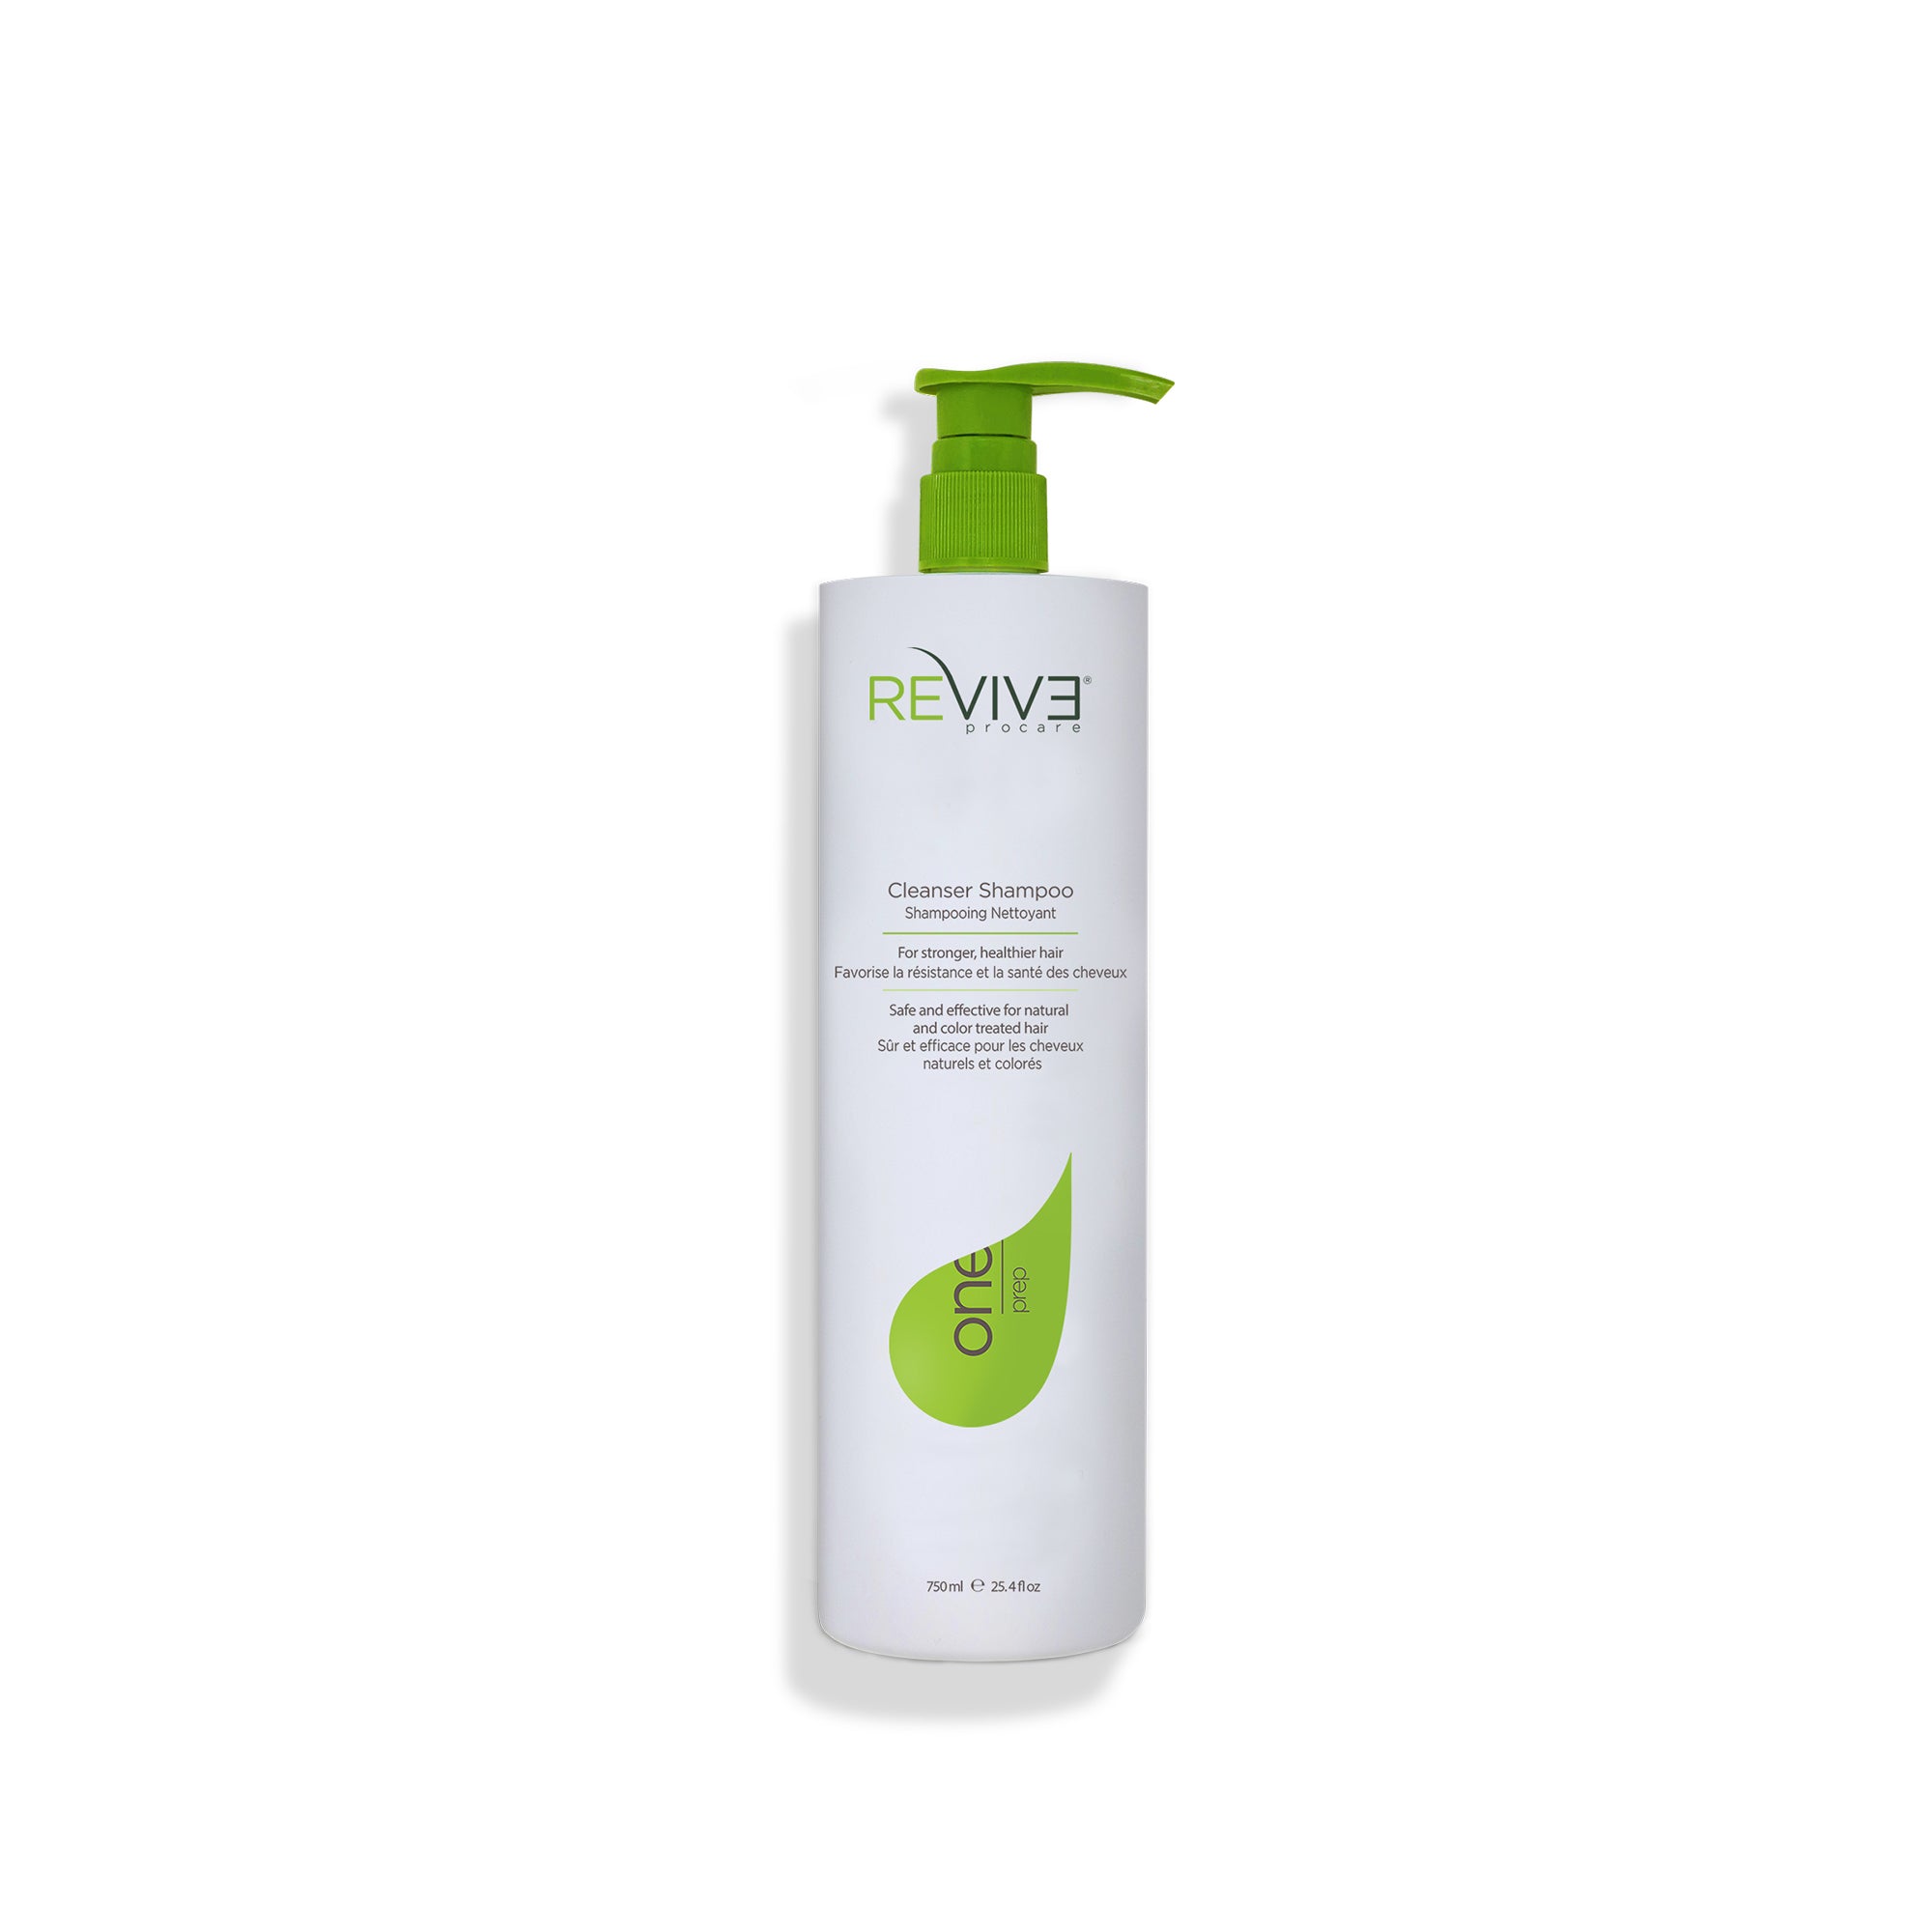 PREP Procare 25.4 oz Cleanser Reviv3 Shampoo - –